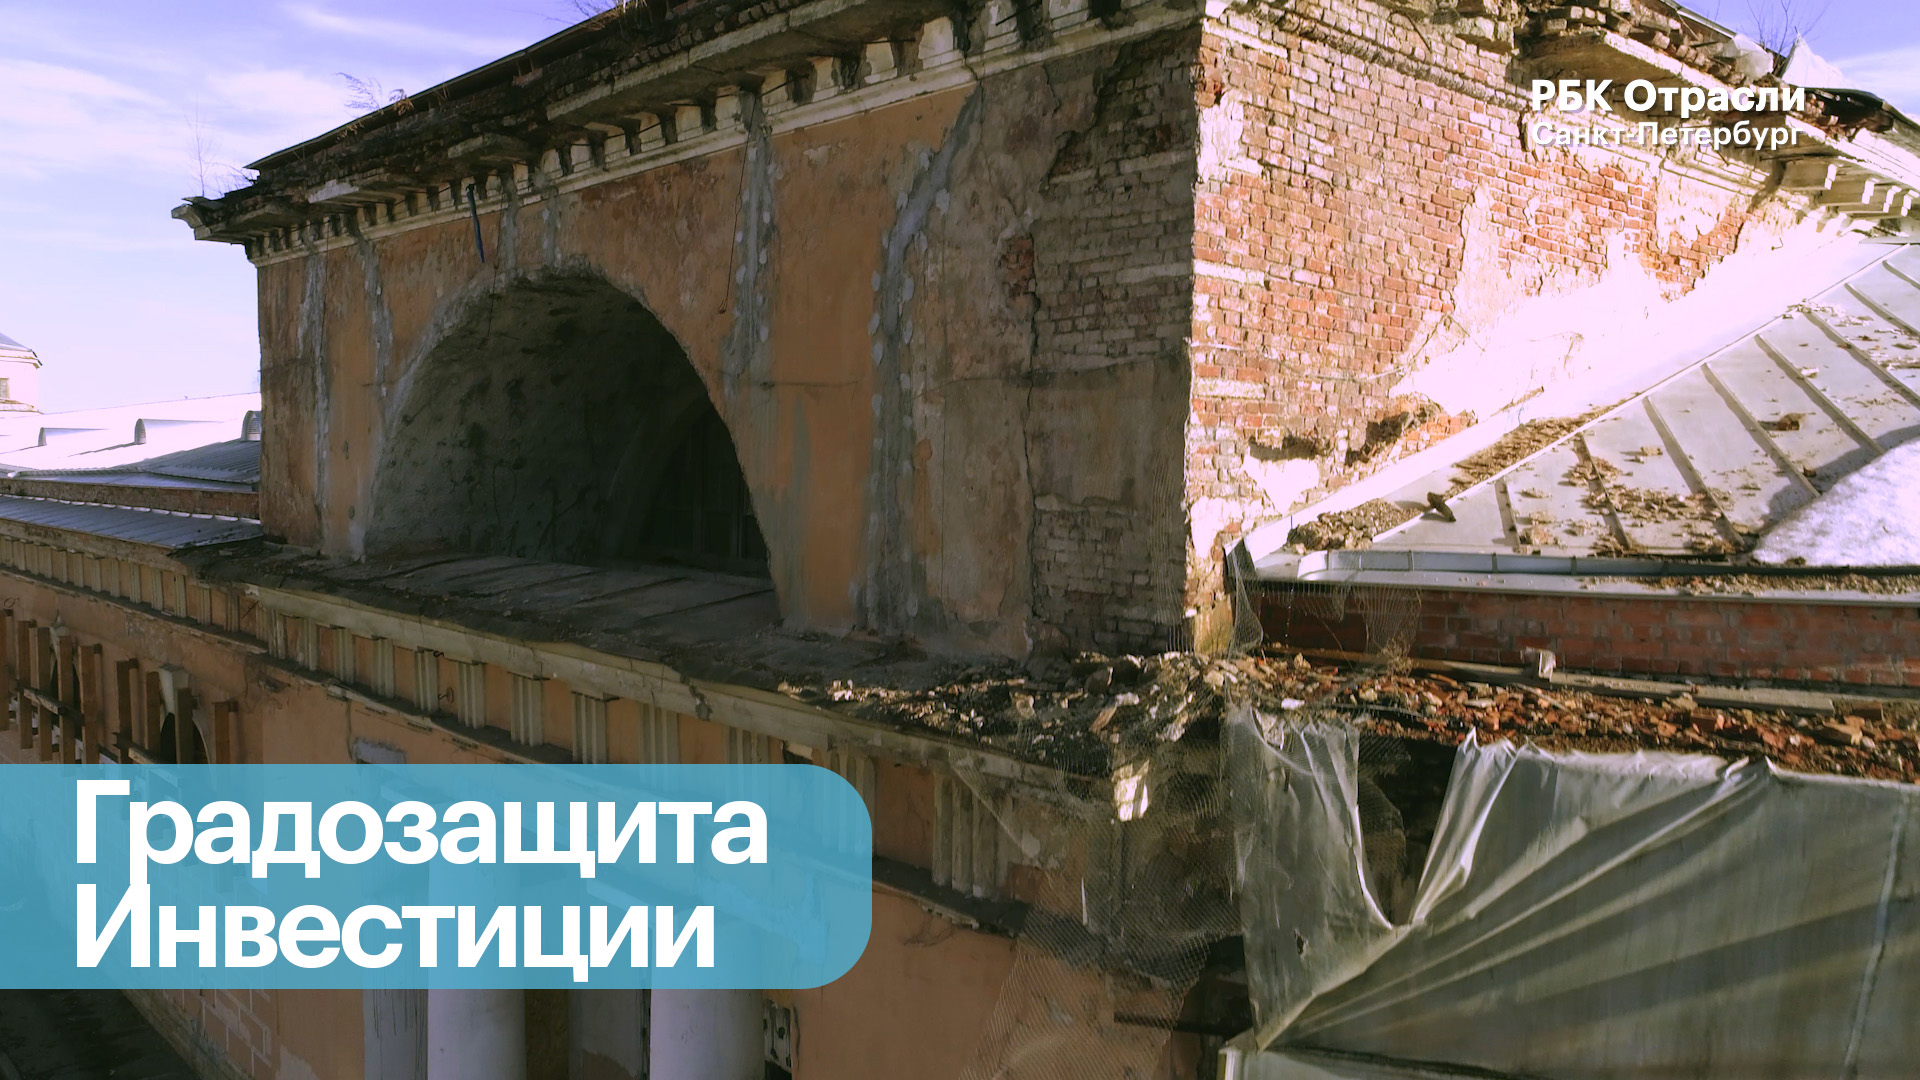 Бизнес-новость. Как спасти от разрушения исторический центр Петербурга